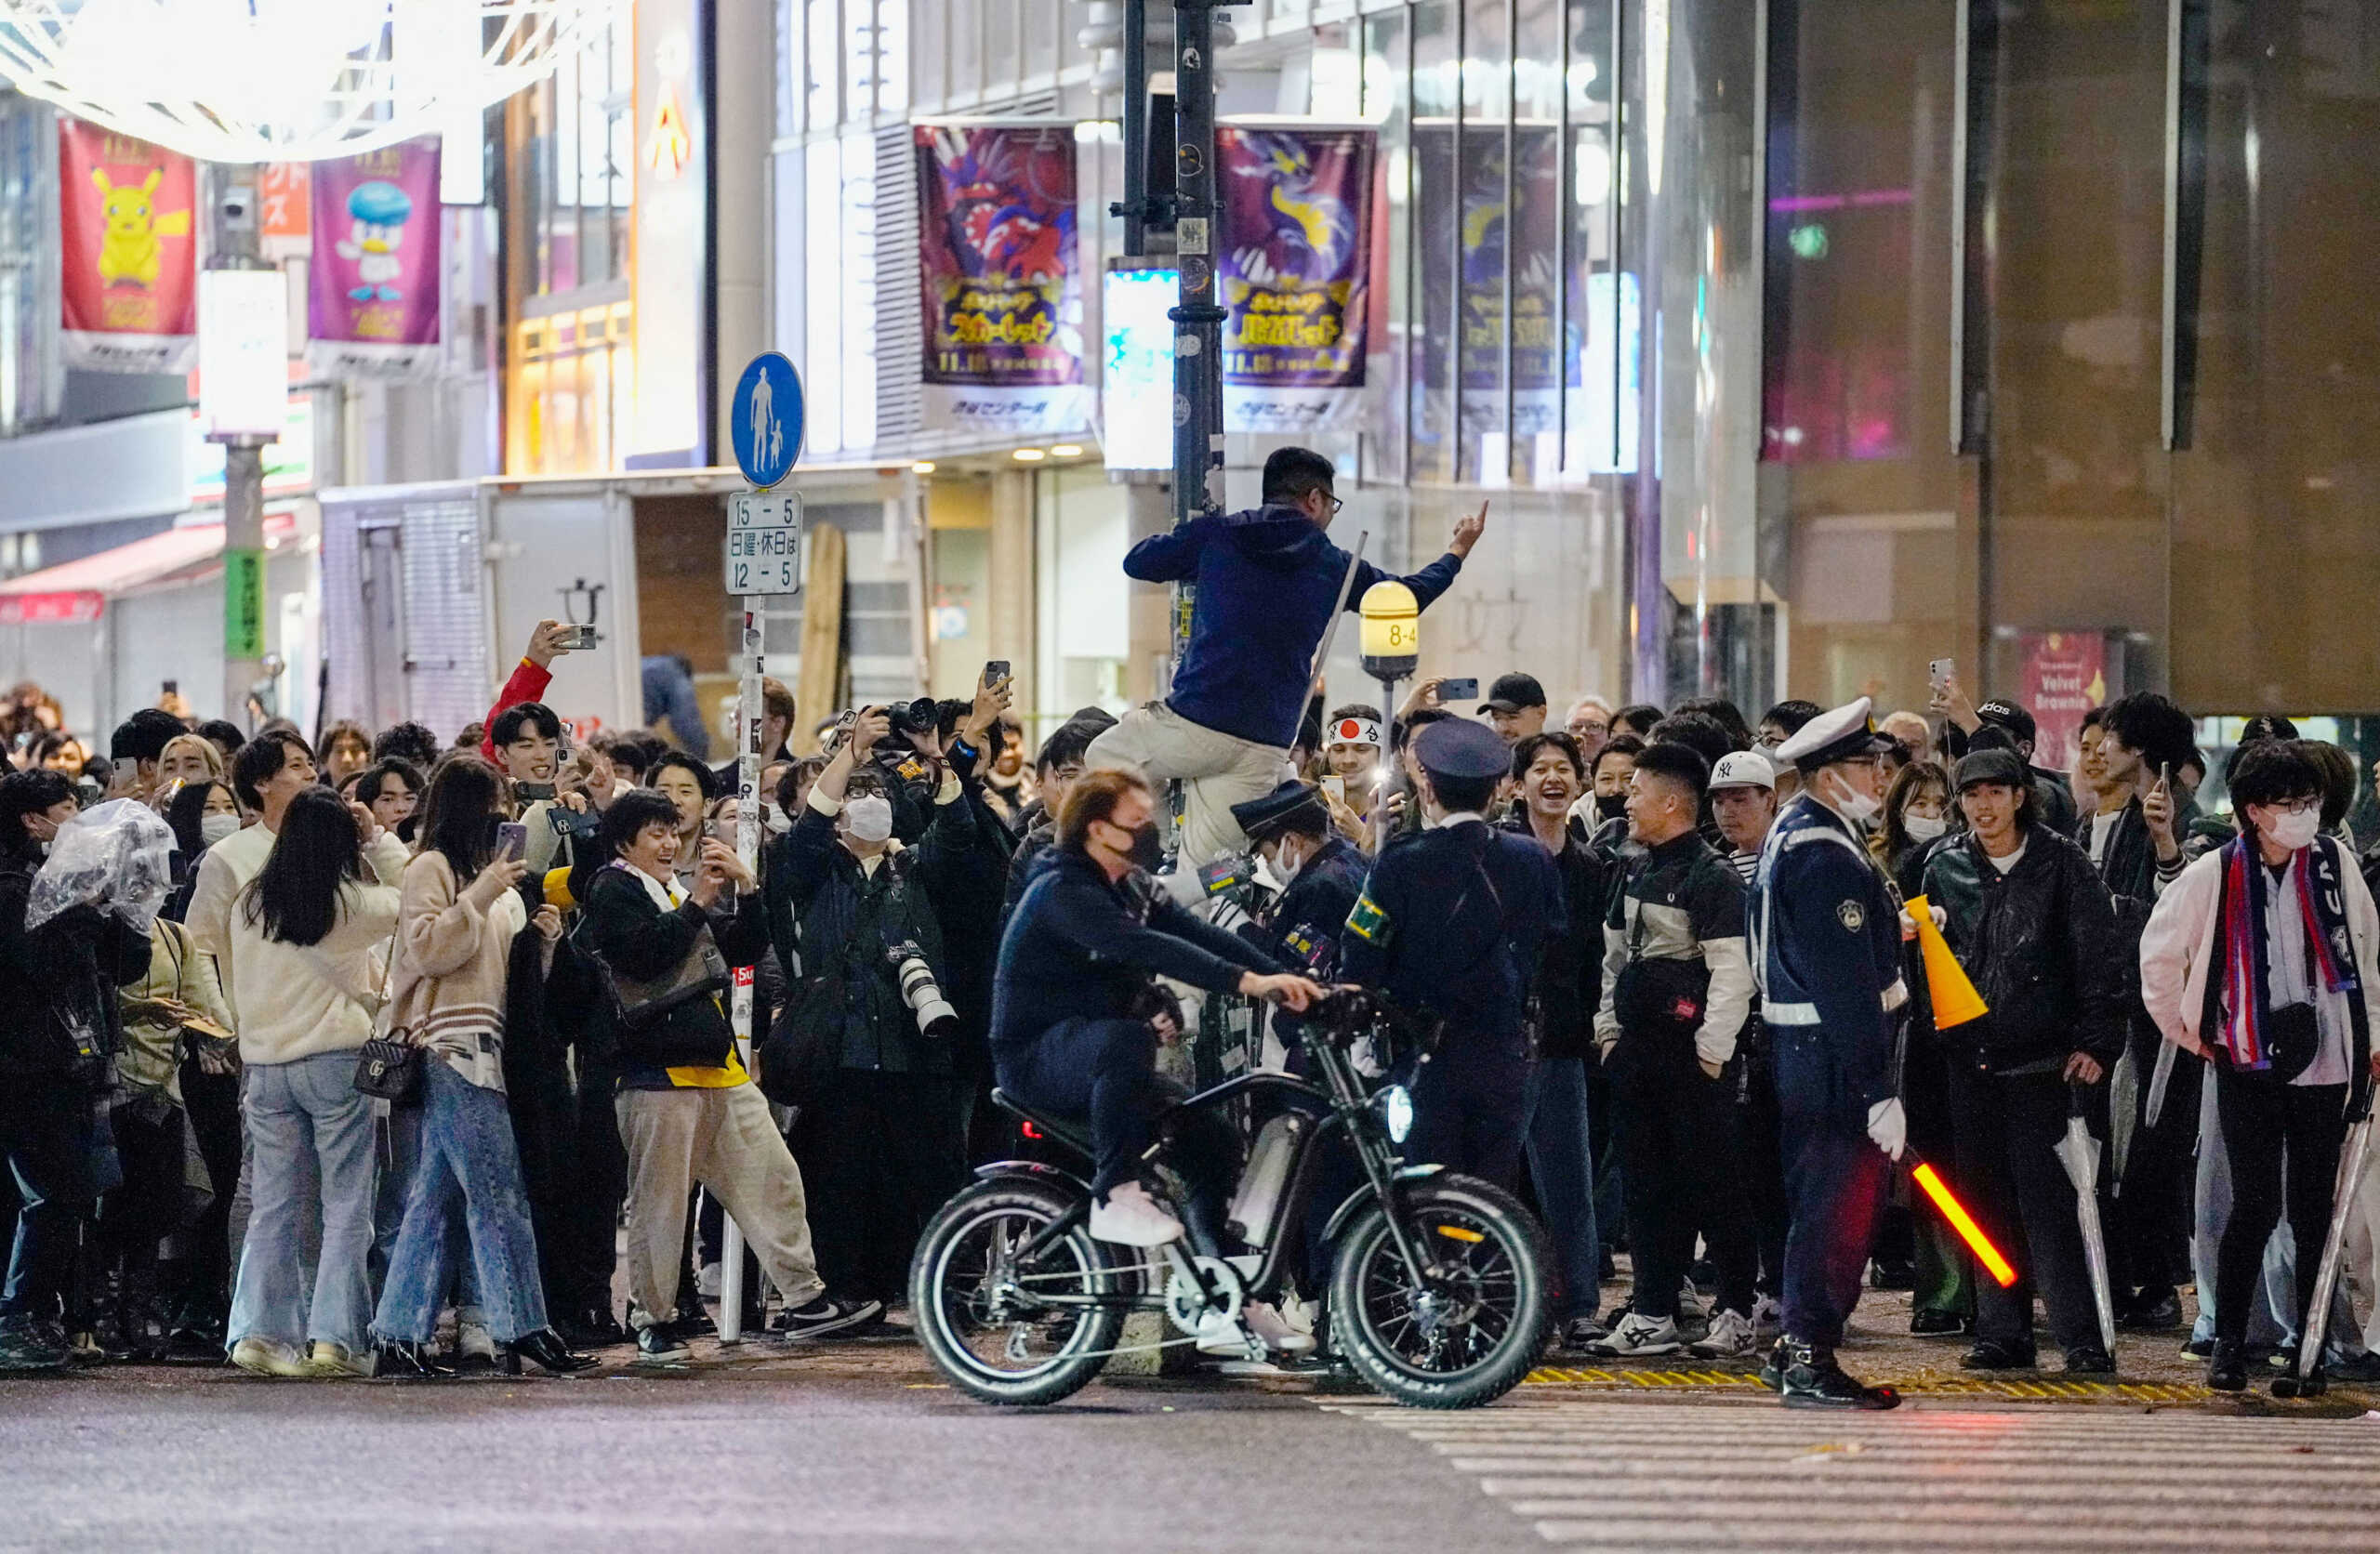 Μουντιάλ 2022: Υπόκλιση στους Ιάπωνες – Βγήκαν στους δρόμους του Τόκιο να πανηγυρίσουν και σταματούσαν όταν άναβε κόκκινο!